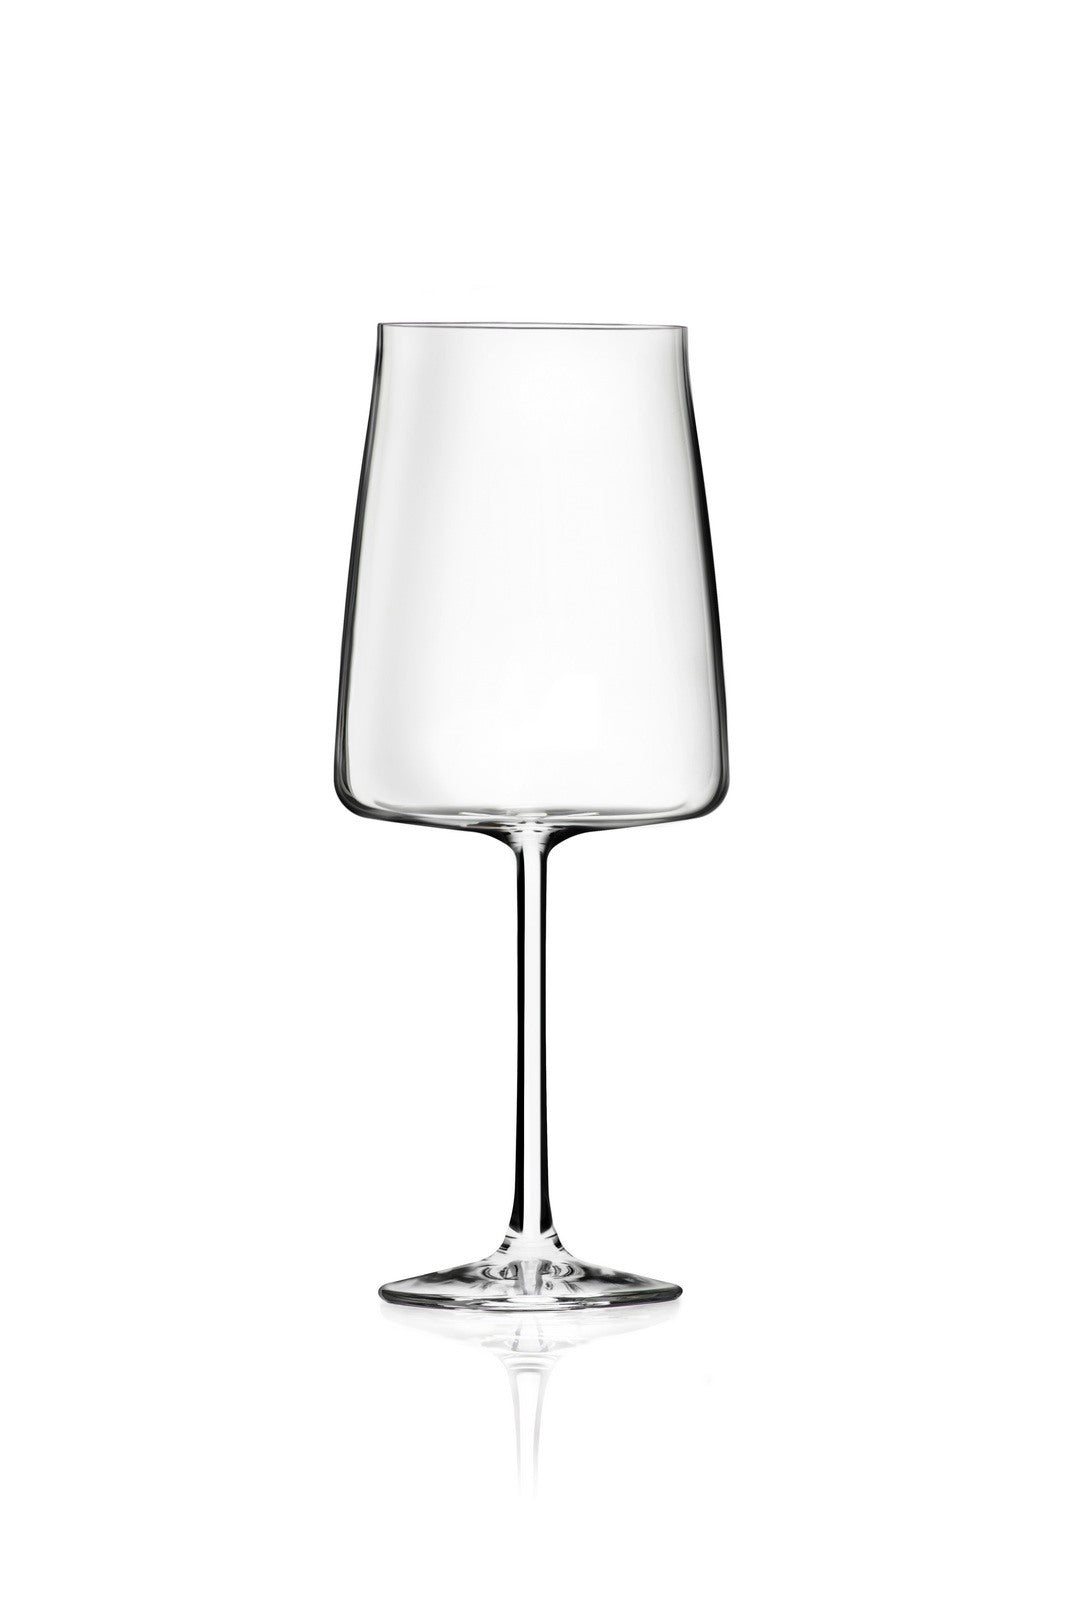 immagine-1-rcr-cristalleria-italiana-essential-e65-set-da-6-calici-vino-in-vetro-ean-8007815272891